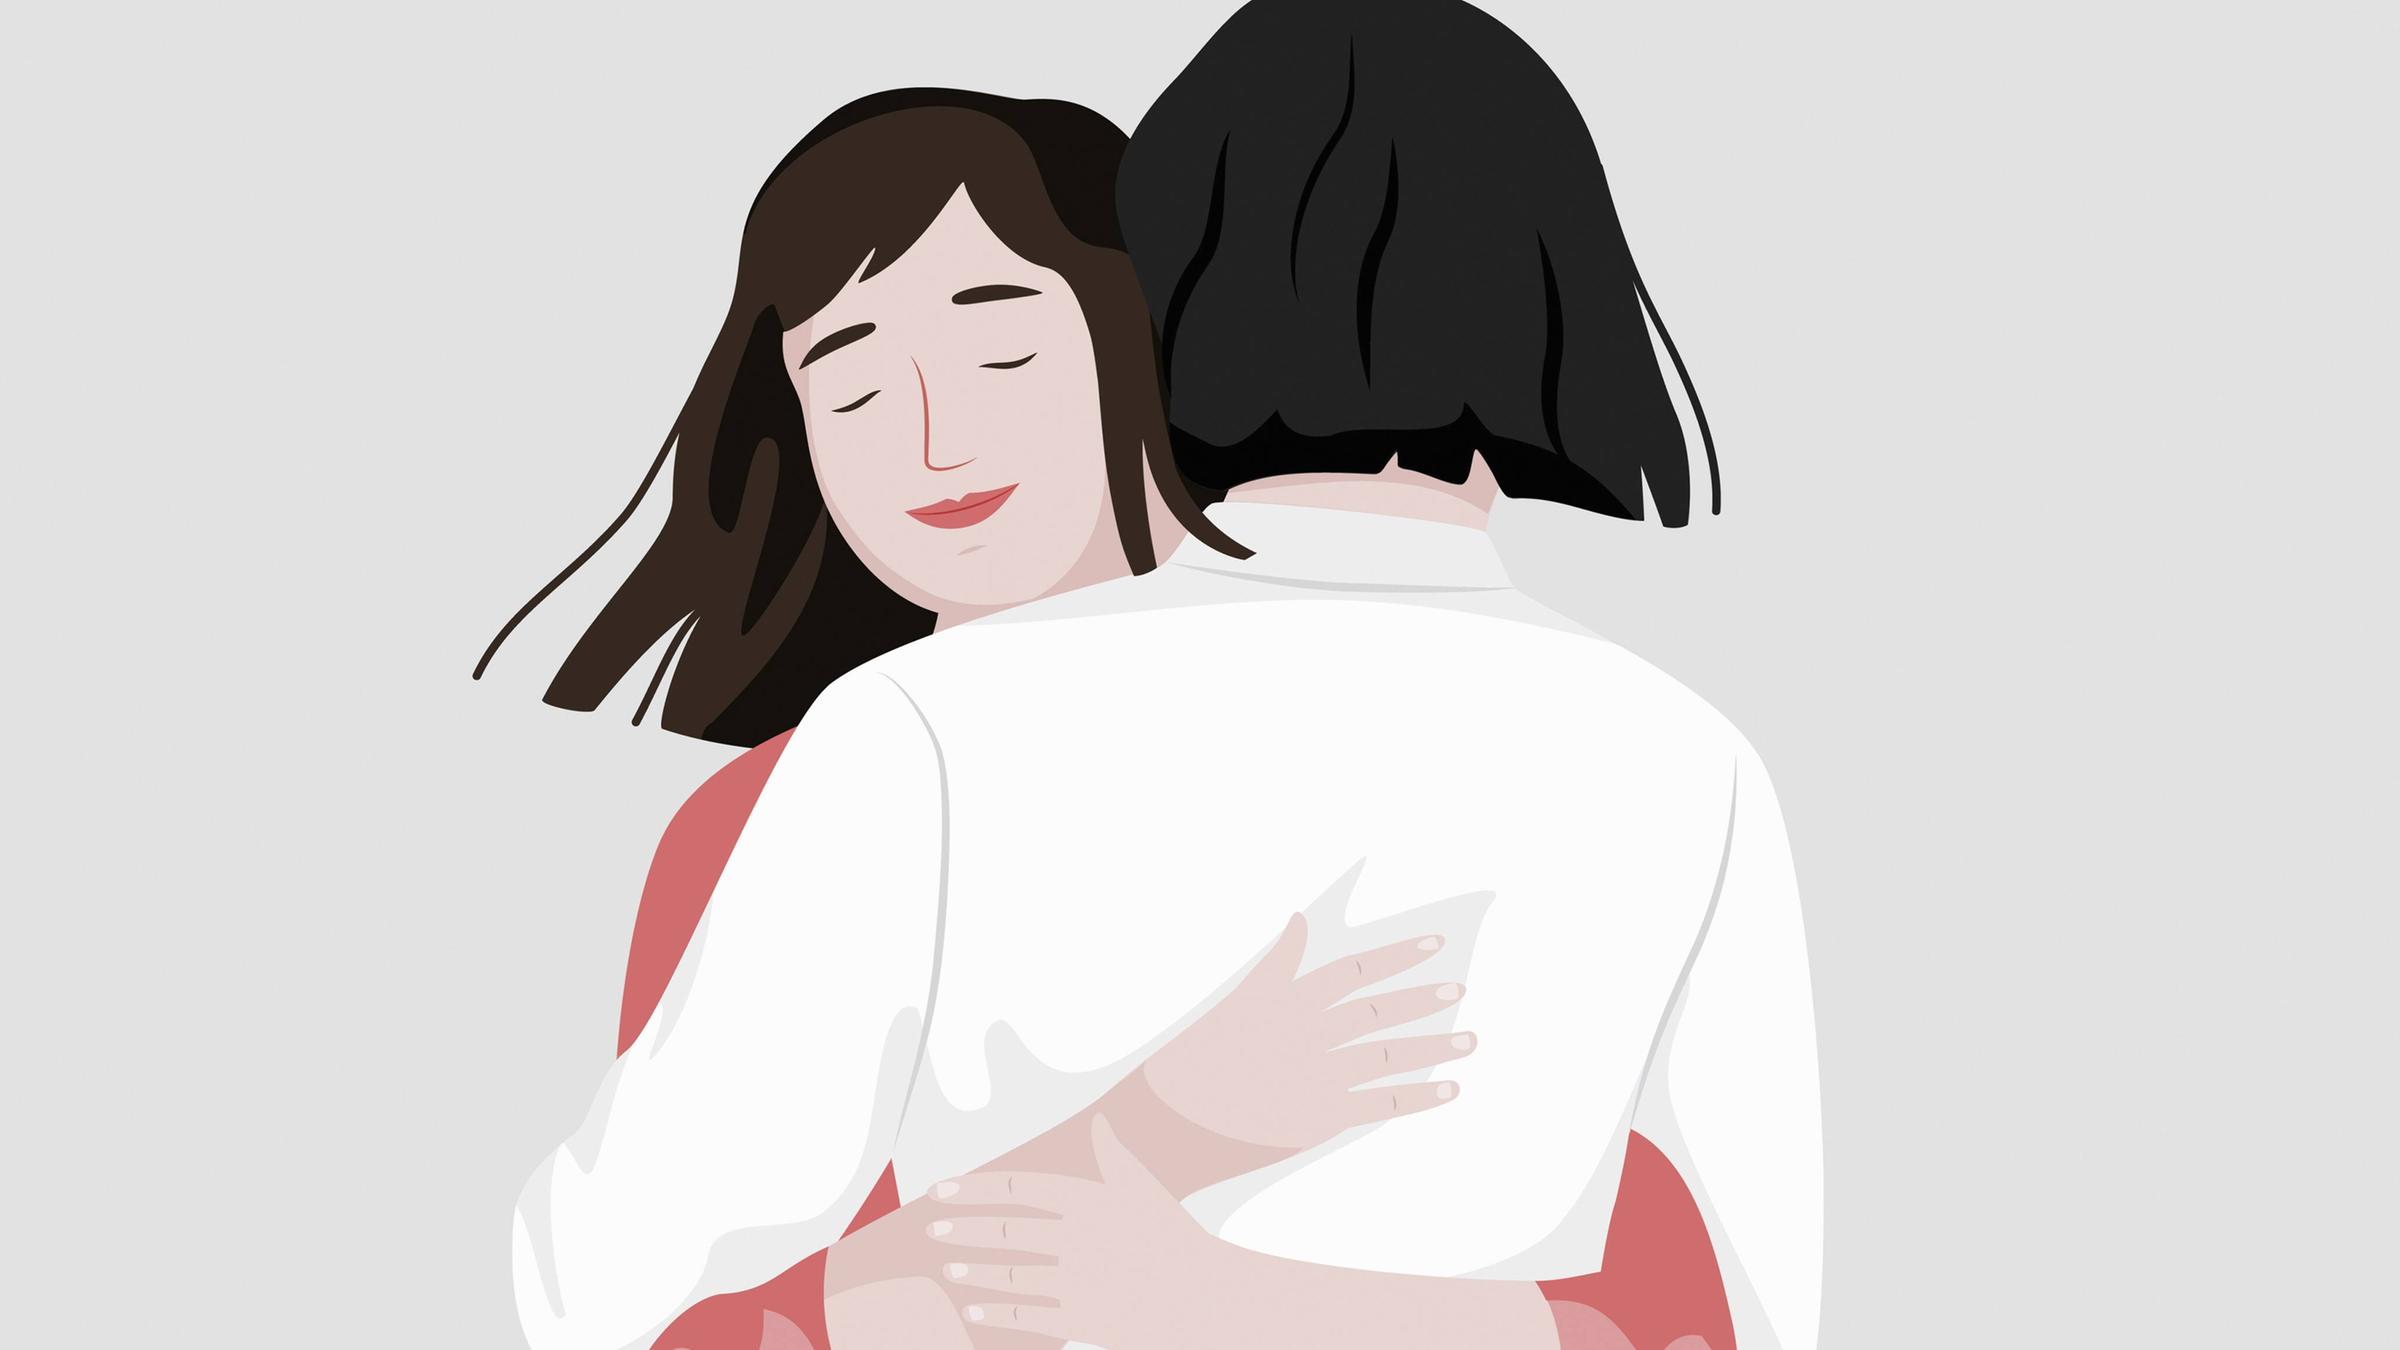 Illustration zweier junger Frauen, die sich umarmen. Eine von ihnen hat...</p>

                        <a href=